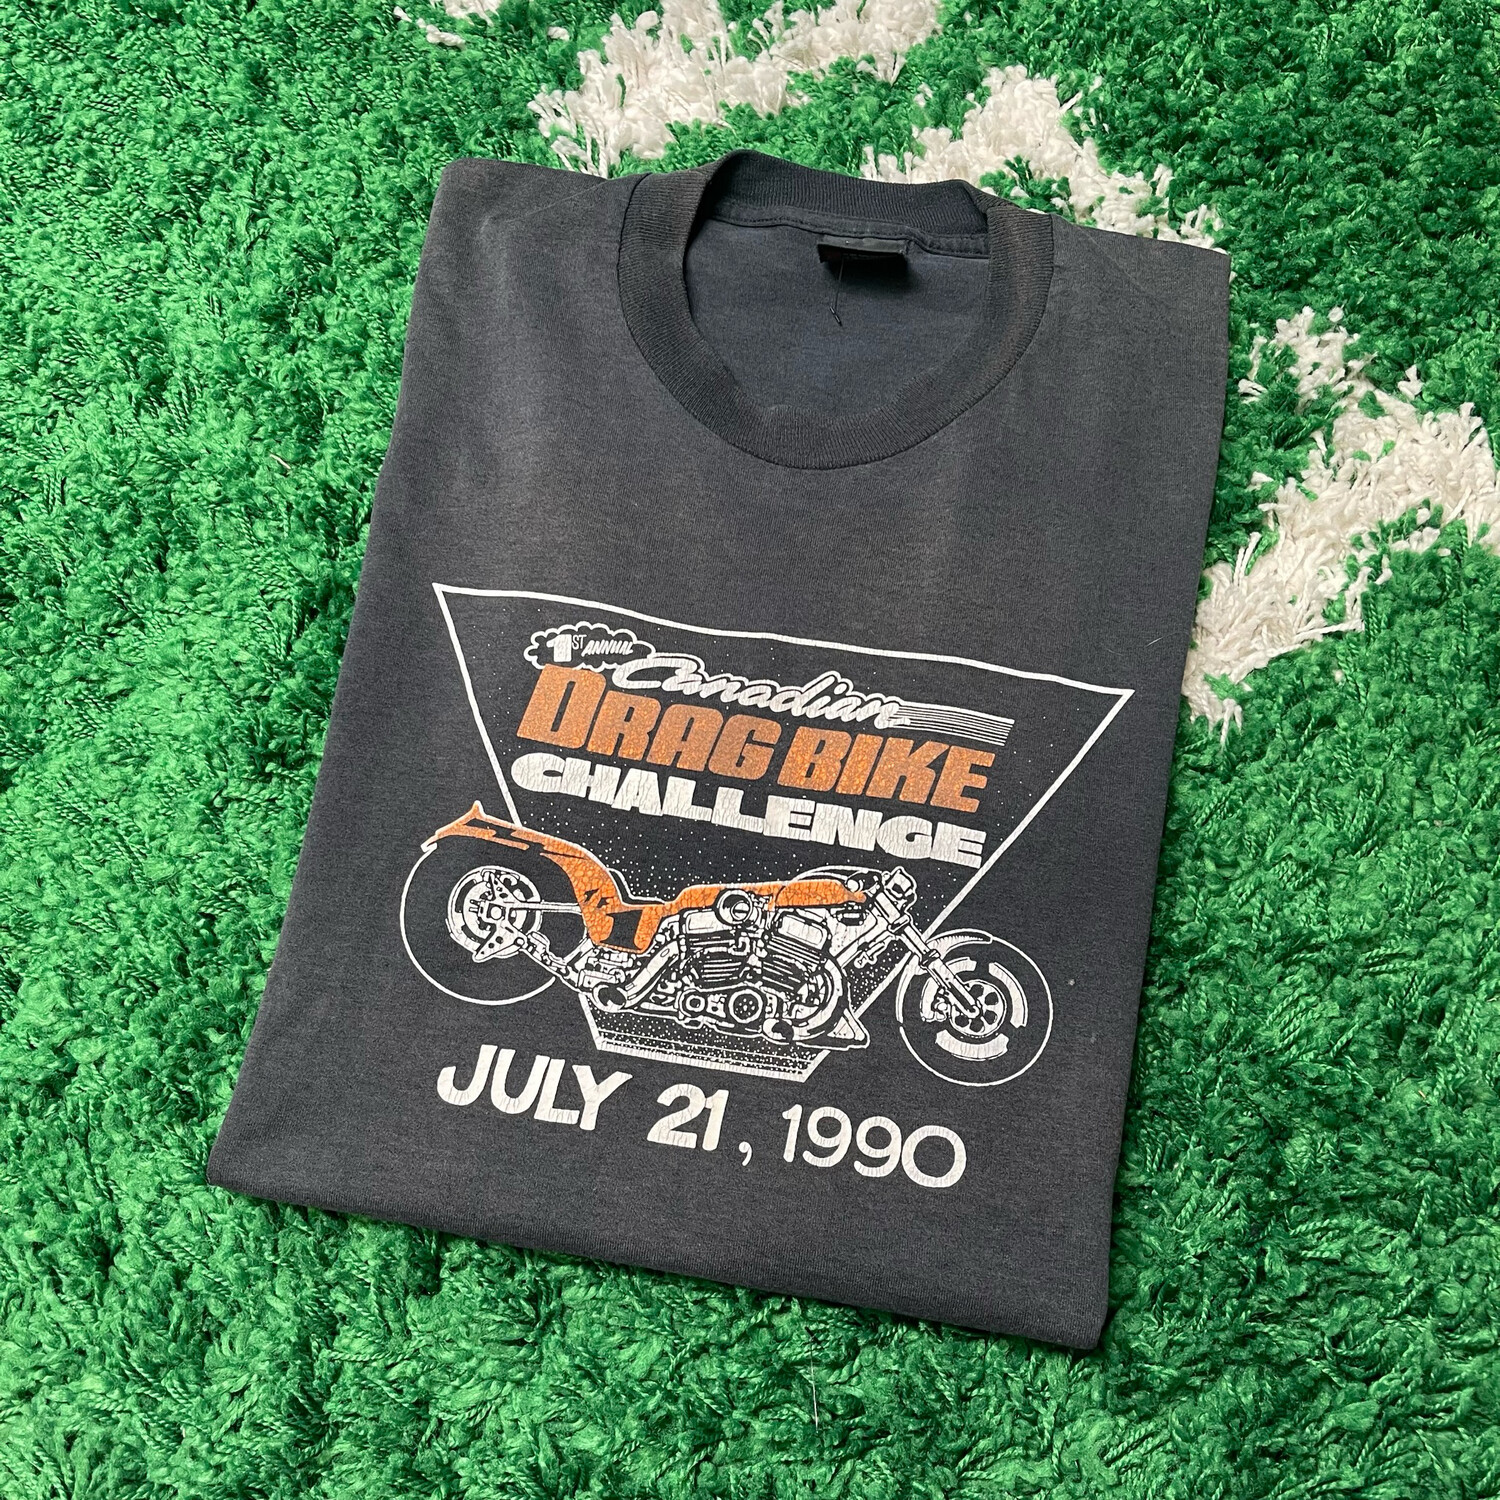 Harley Davidson Canadian Drag Bike Challenge 1990 Tee Size Large